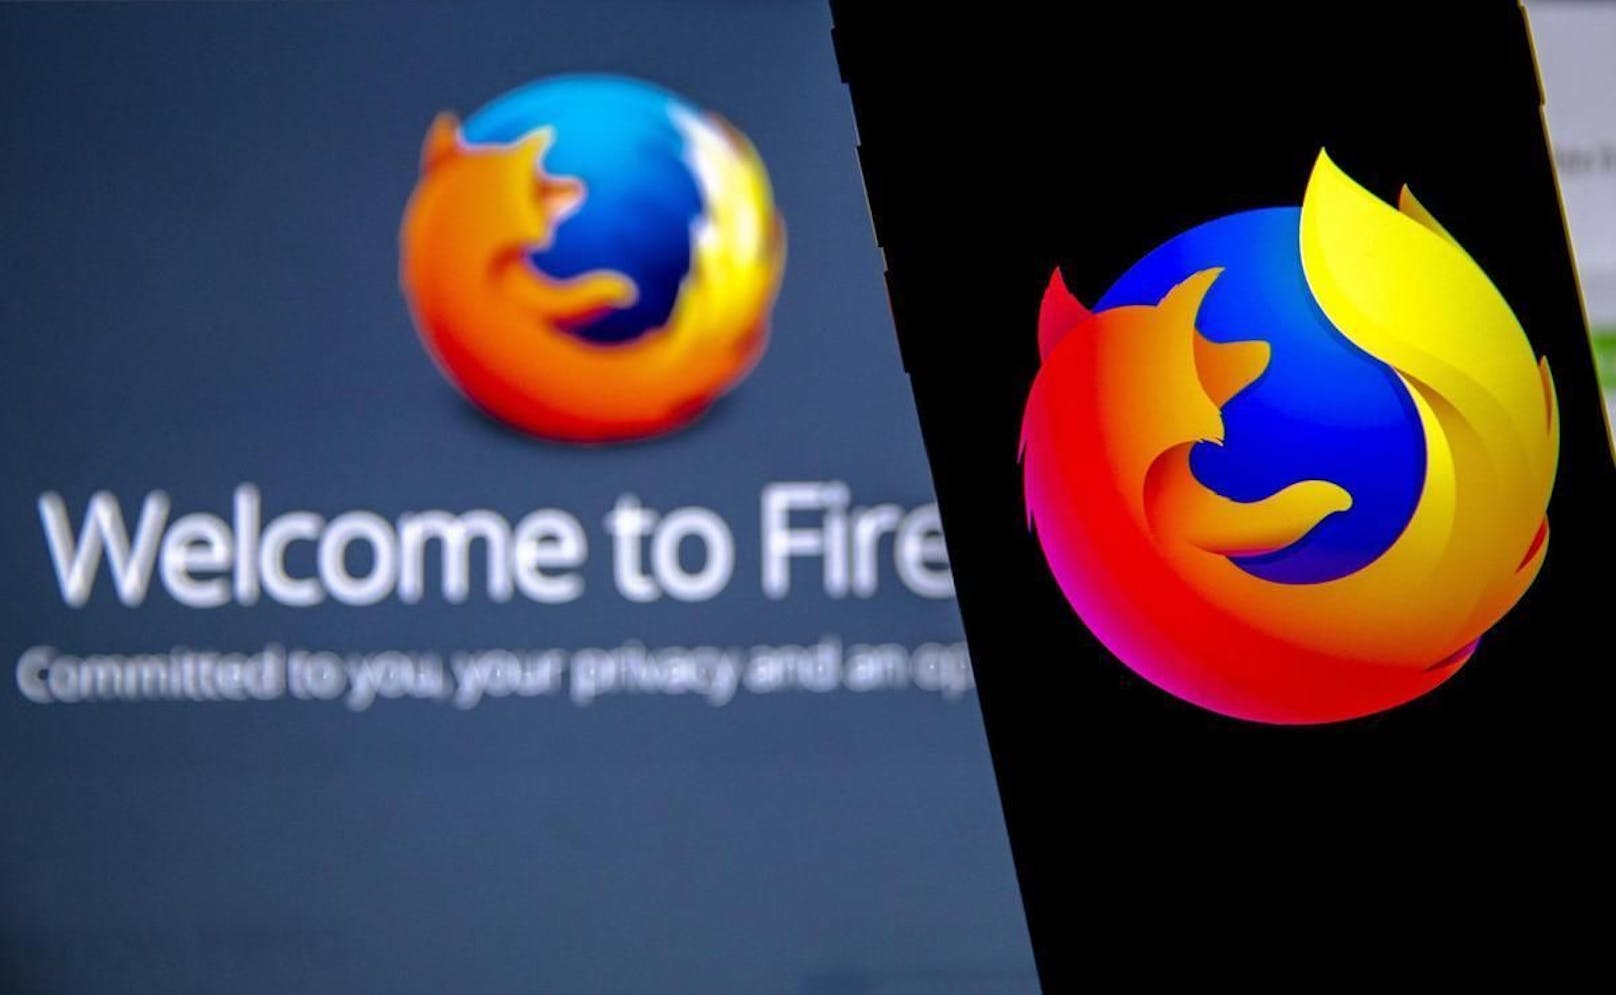 Neu will Firefox auch gegen sogenannte Supercookies vorgehen.